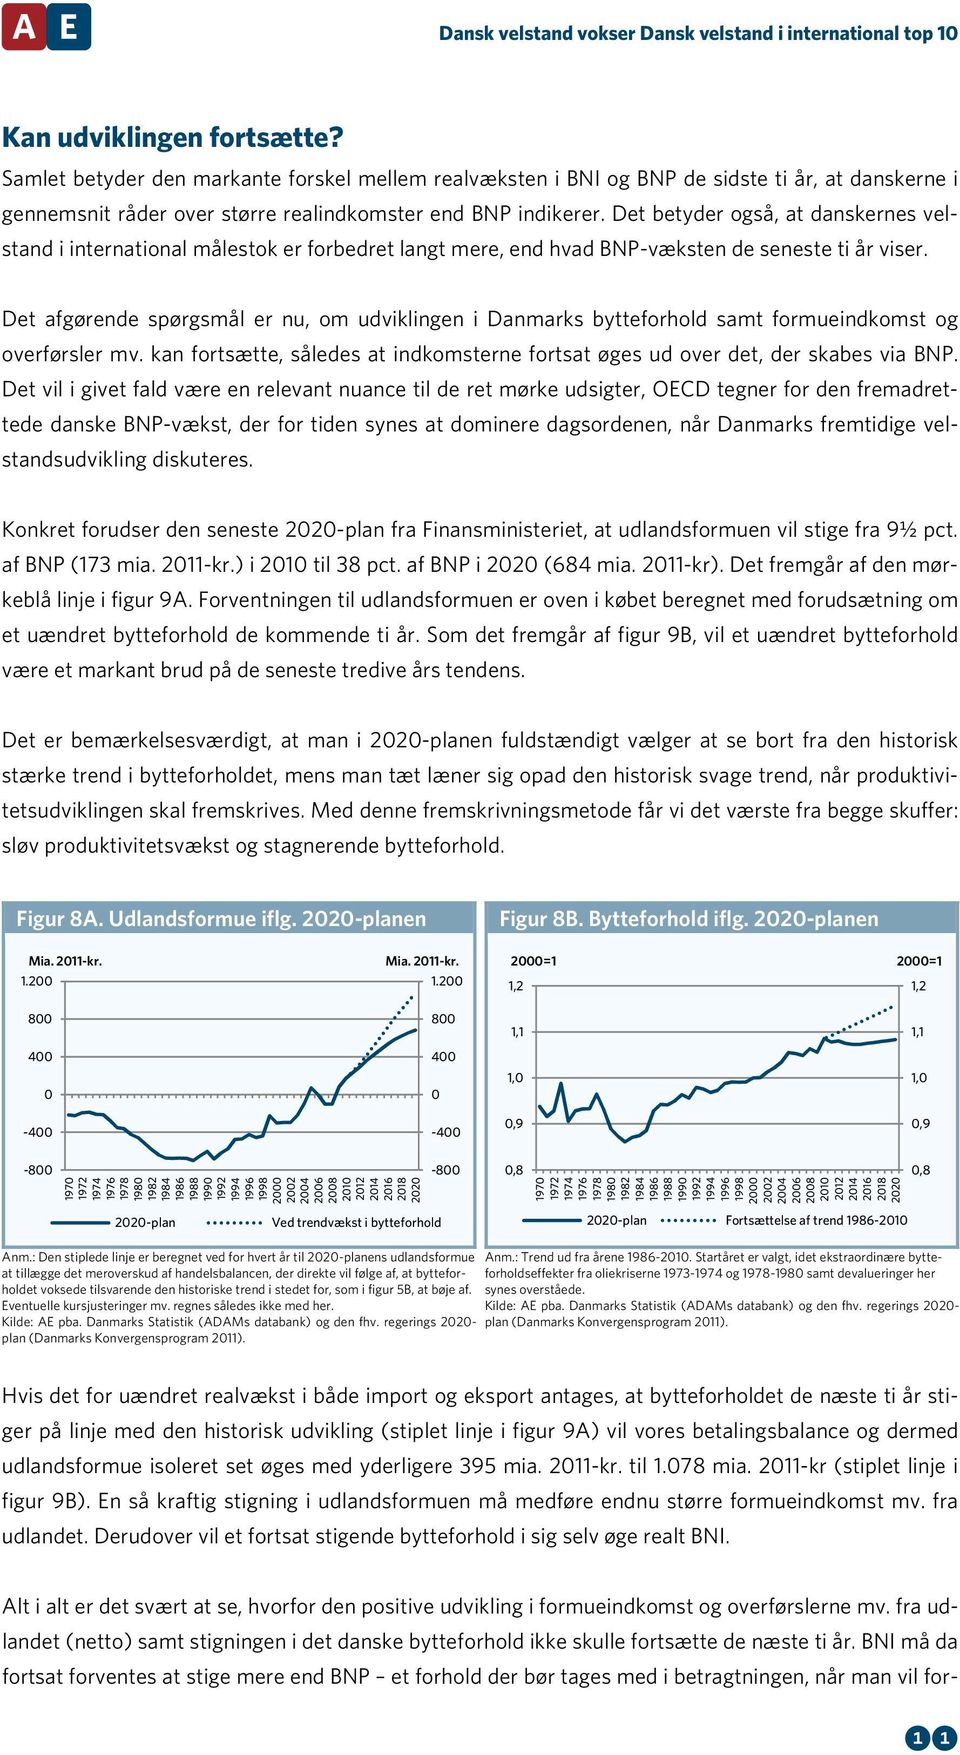 Det afgørende spørgsmål er nu, om udviklingen i Danmarks bytteforhold samt formueindkomst og overførsler mv. kan fortsætte, således at indkomsterne fortsat øges ud over det, der skabes via BNP.